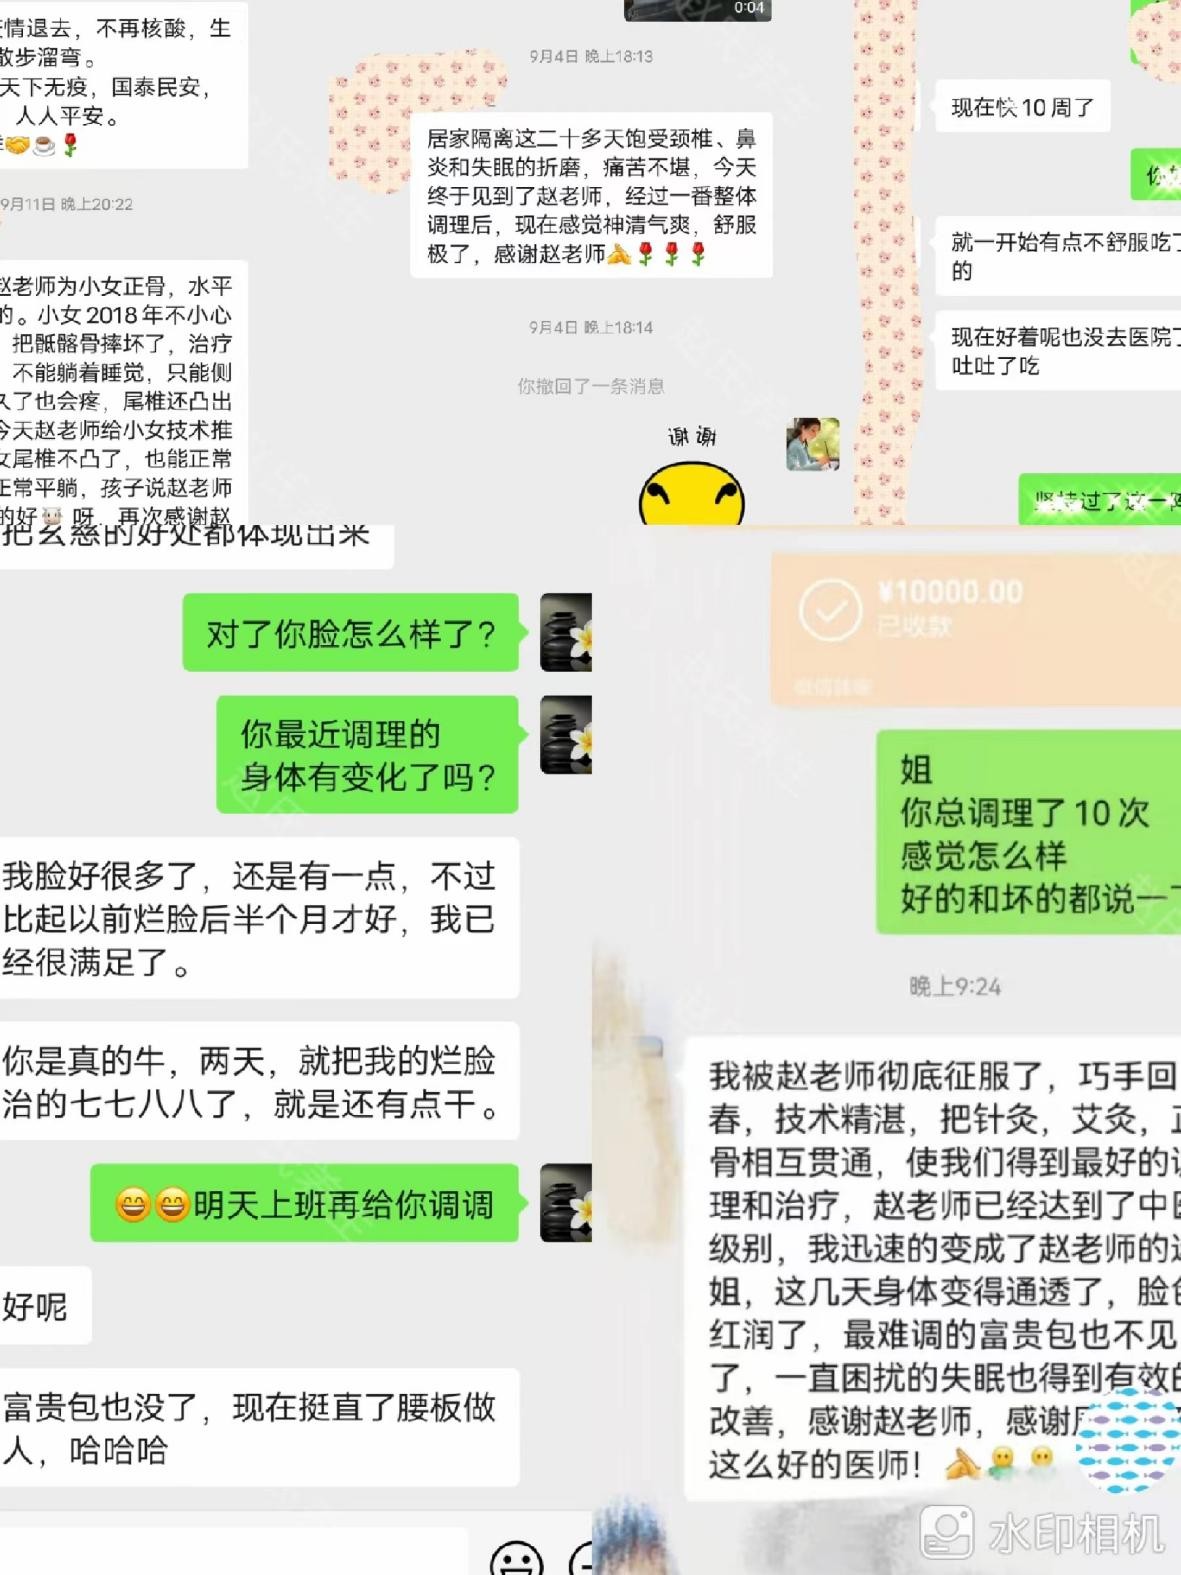 赵丽丽：赵氏健康元气养生疗法《赵氏健康养生中心》-时代新闻网